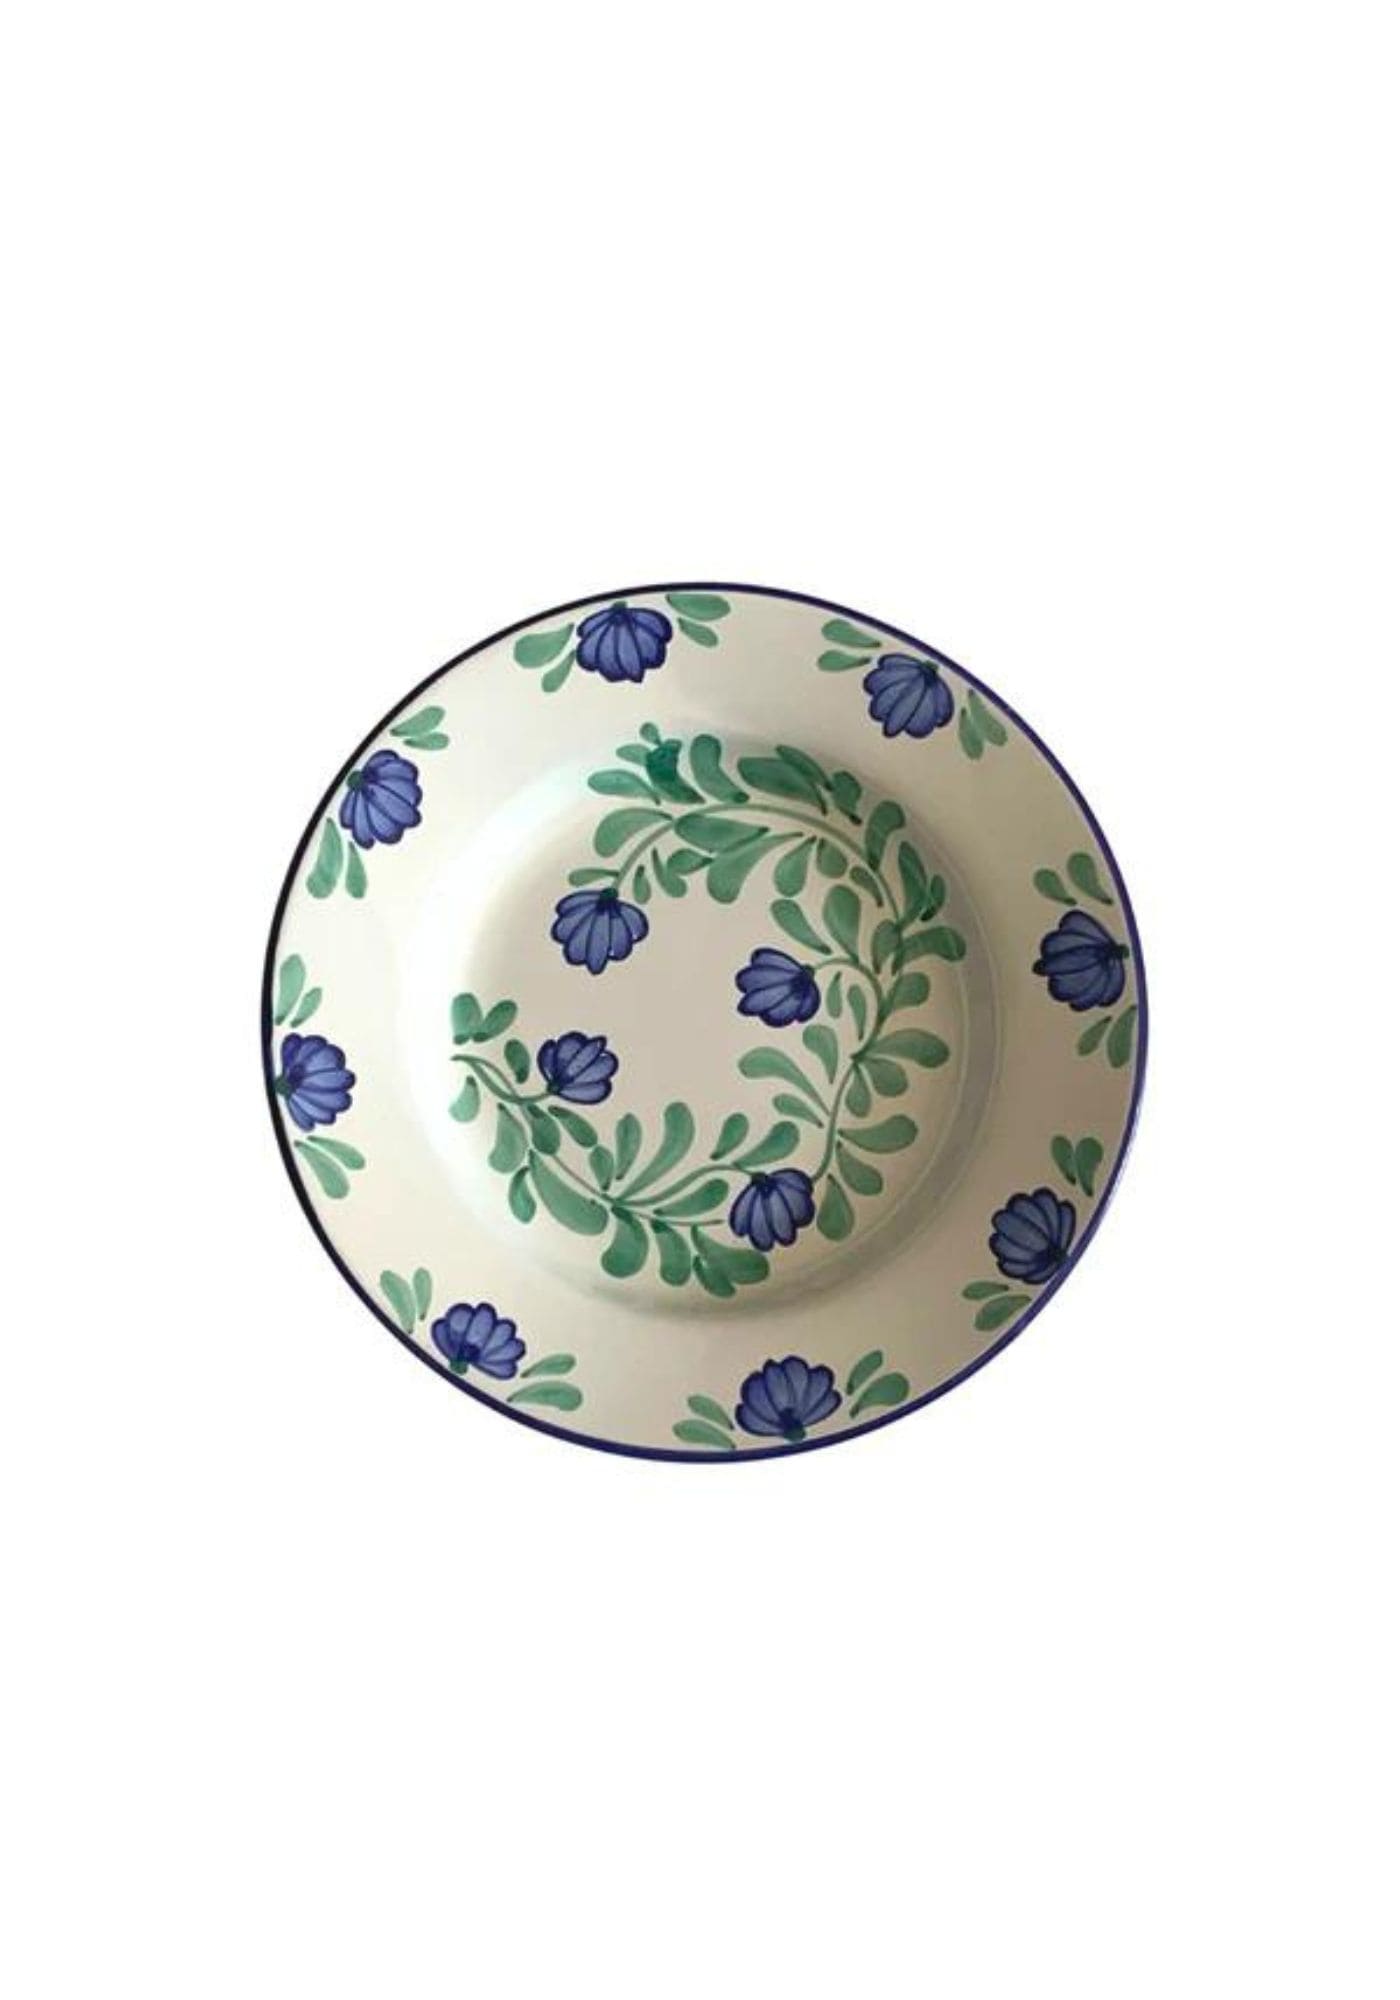 Assiette creuse Luisa motifs fleurs bleues Molleni sur fond blanc